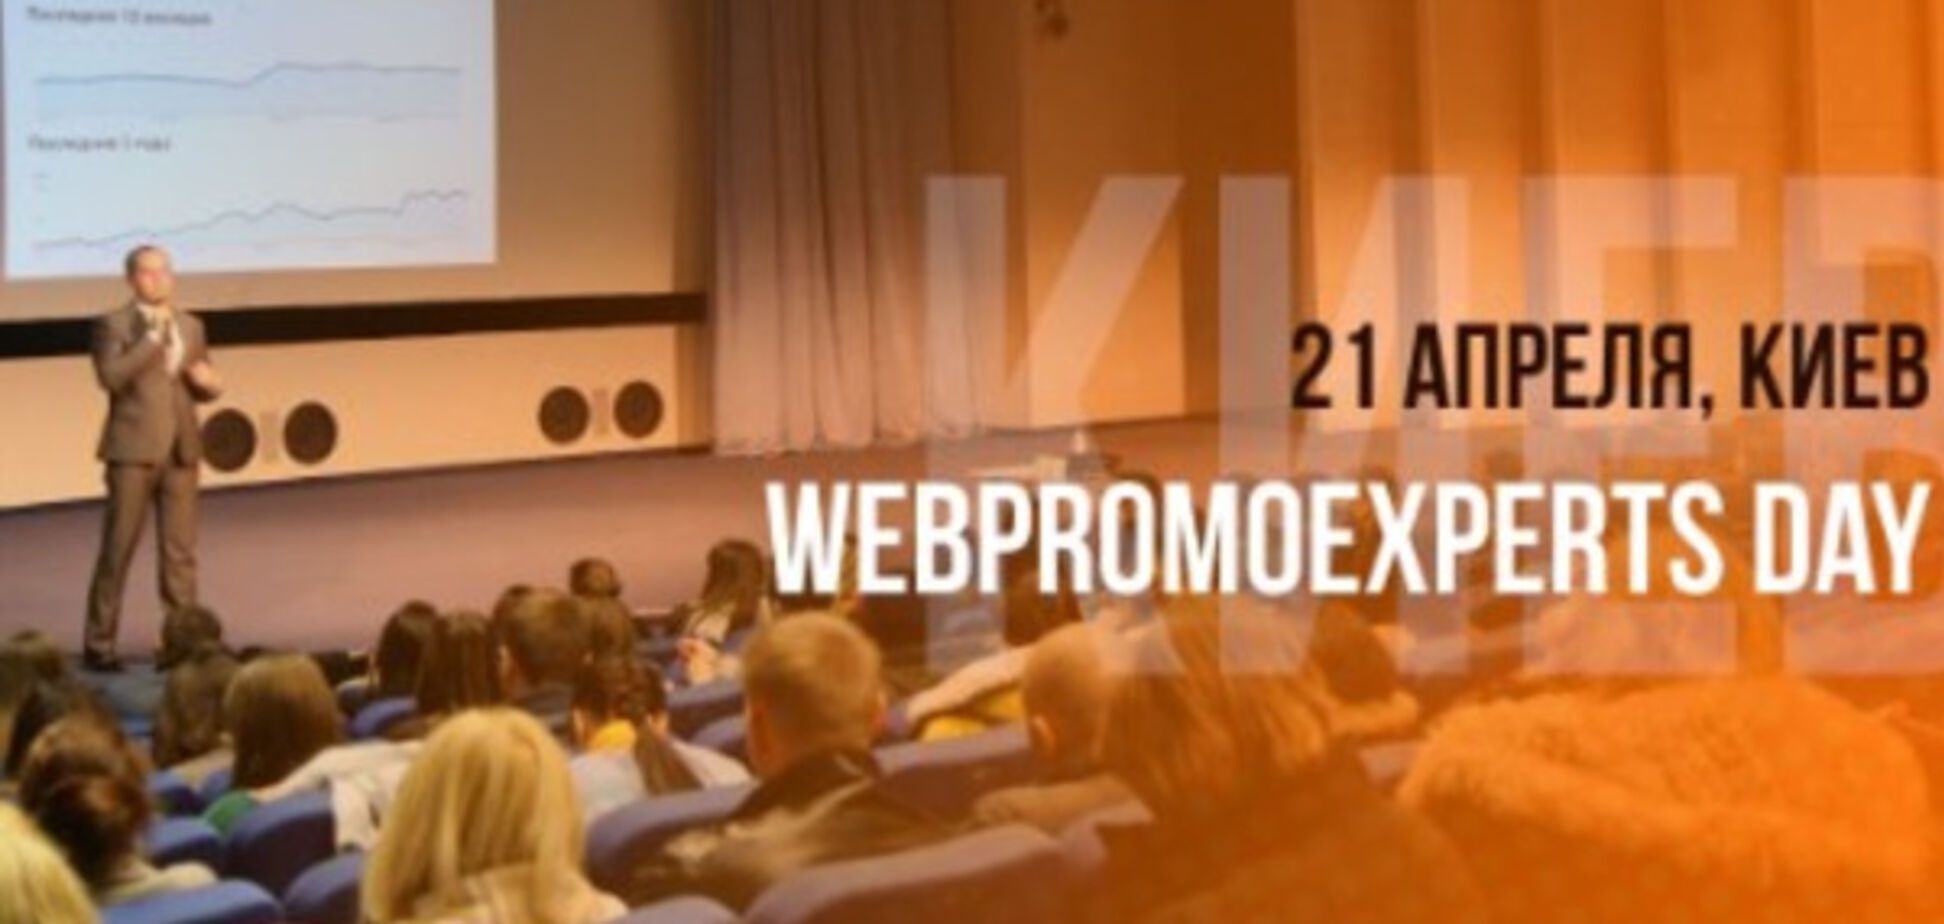 21 апреля в Киеве состоится Главное событие по интернет-маркетингу в Украине – WebPromoExperts Day